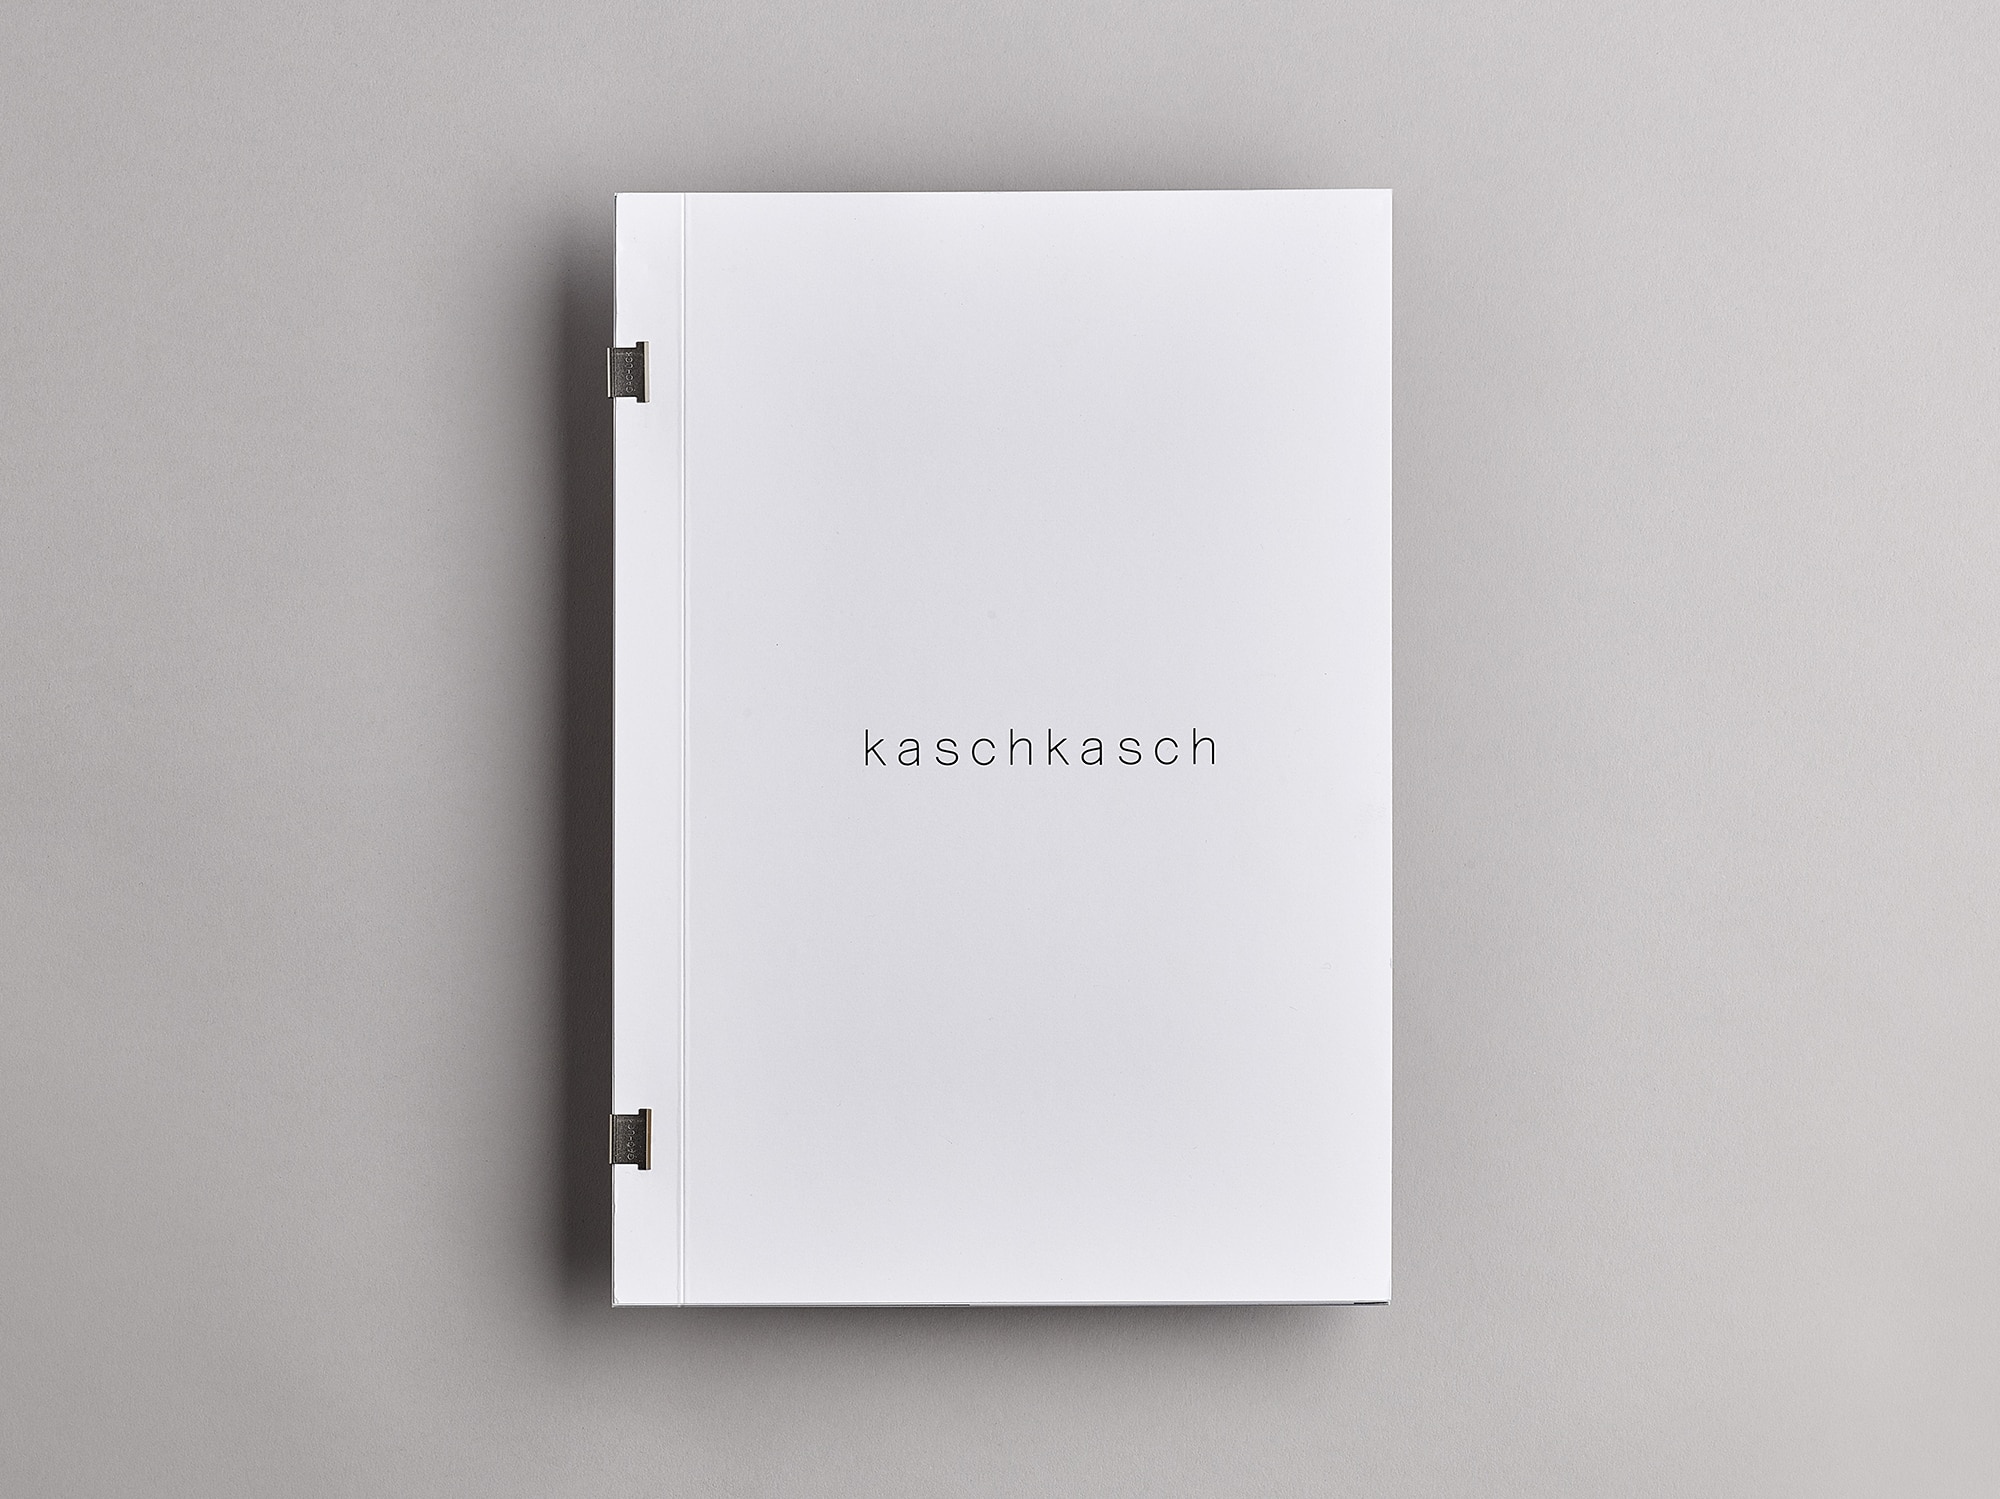 Conception catalogue designers kaschkasch